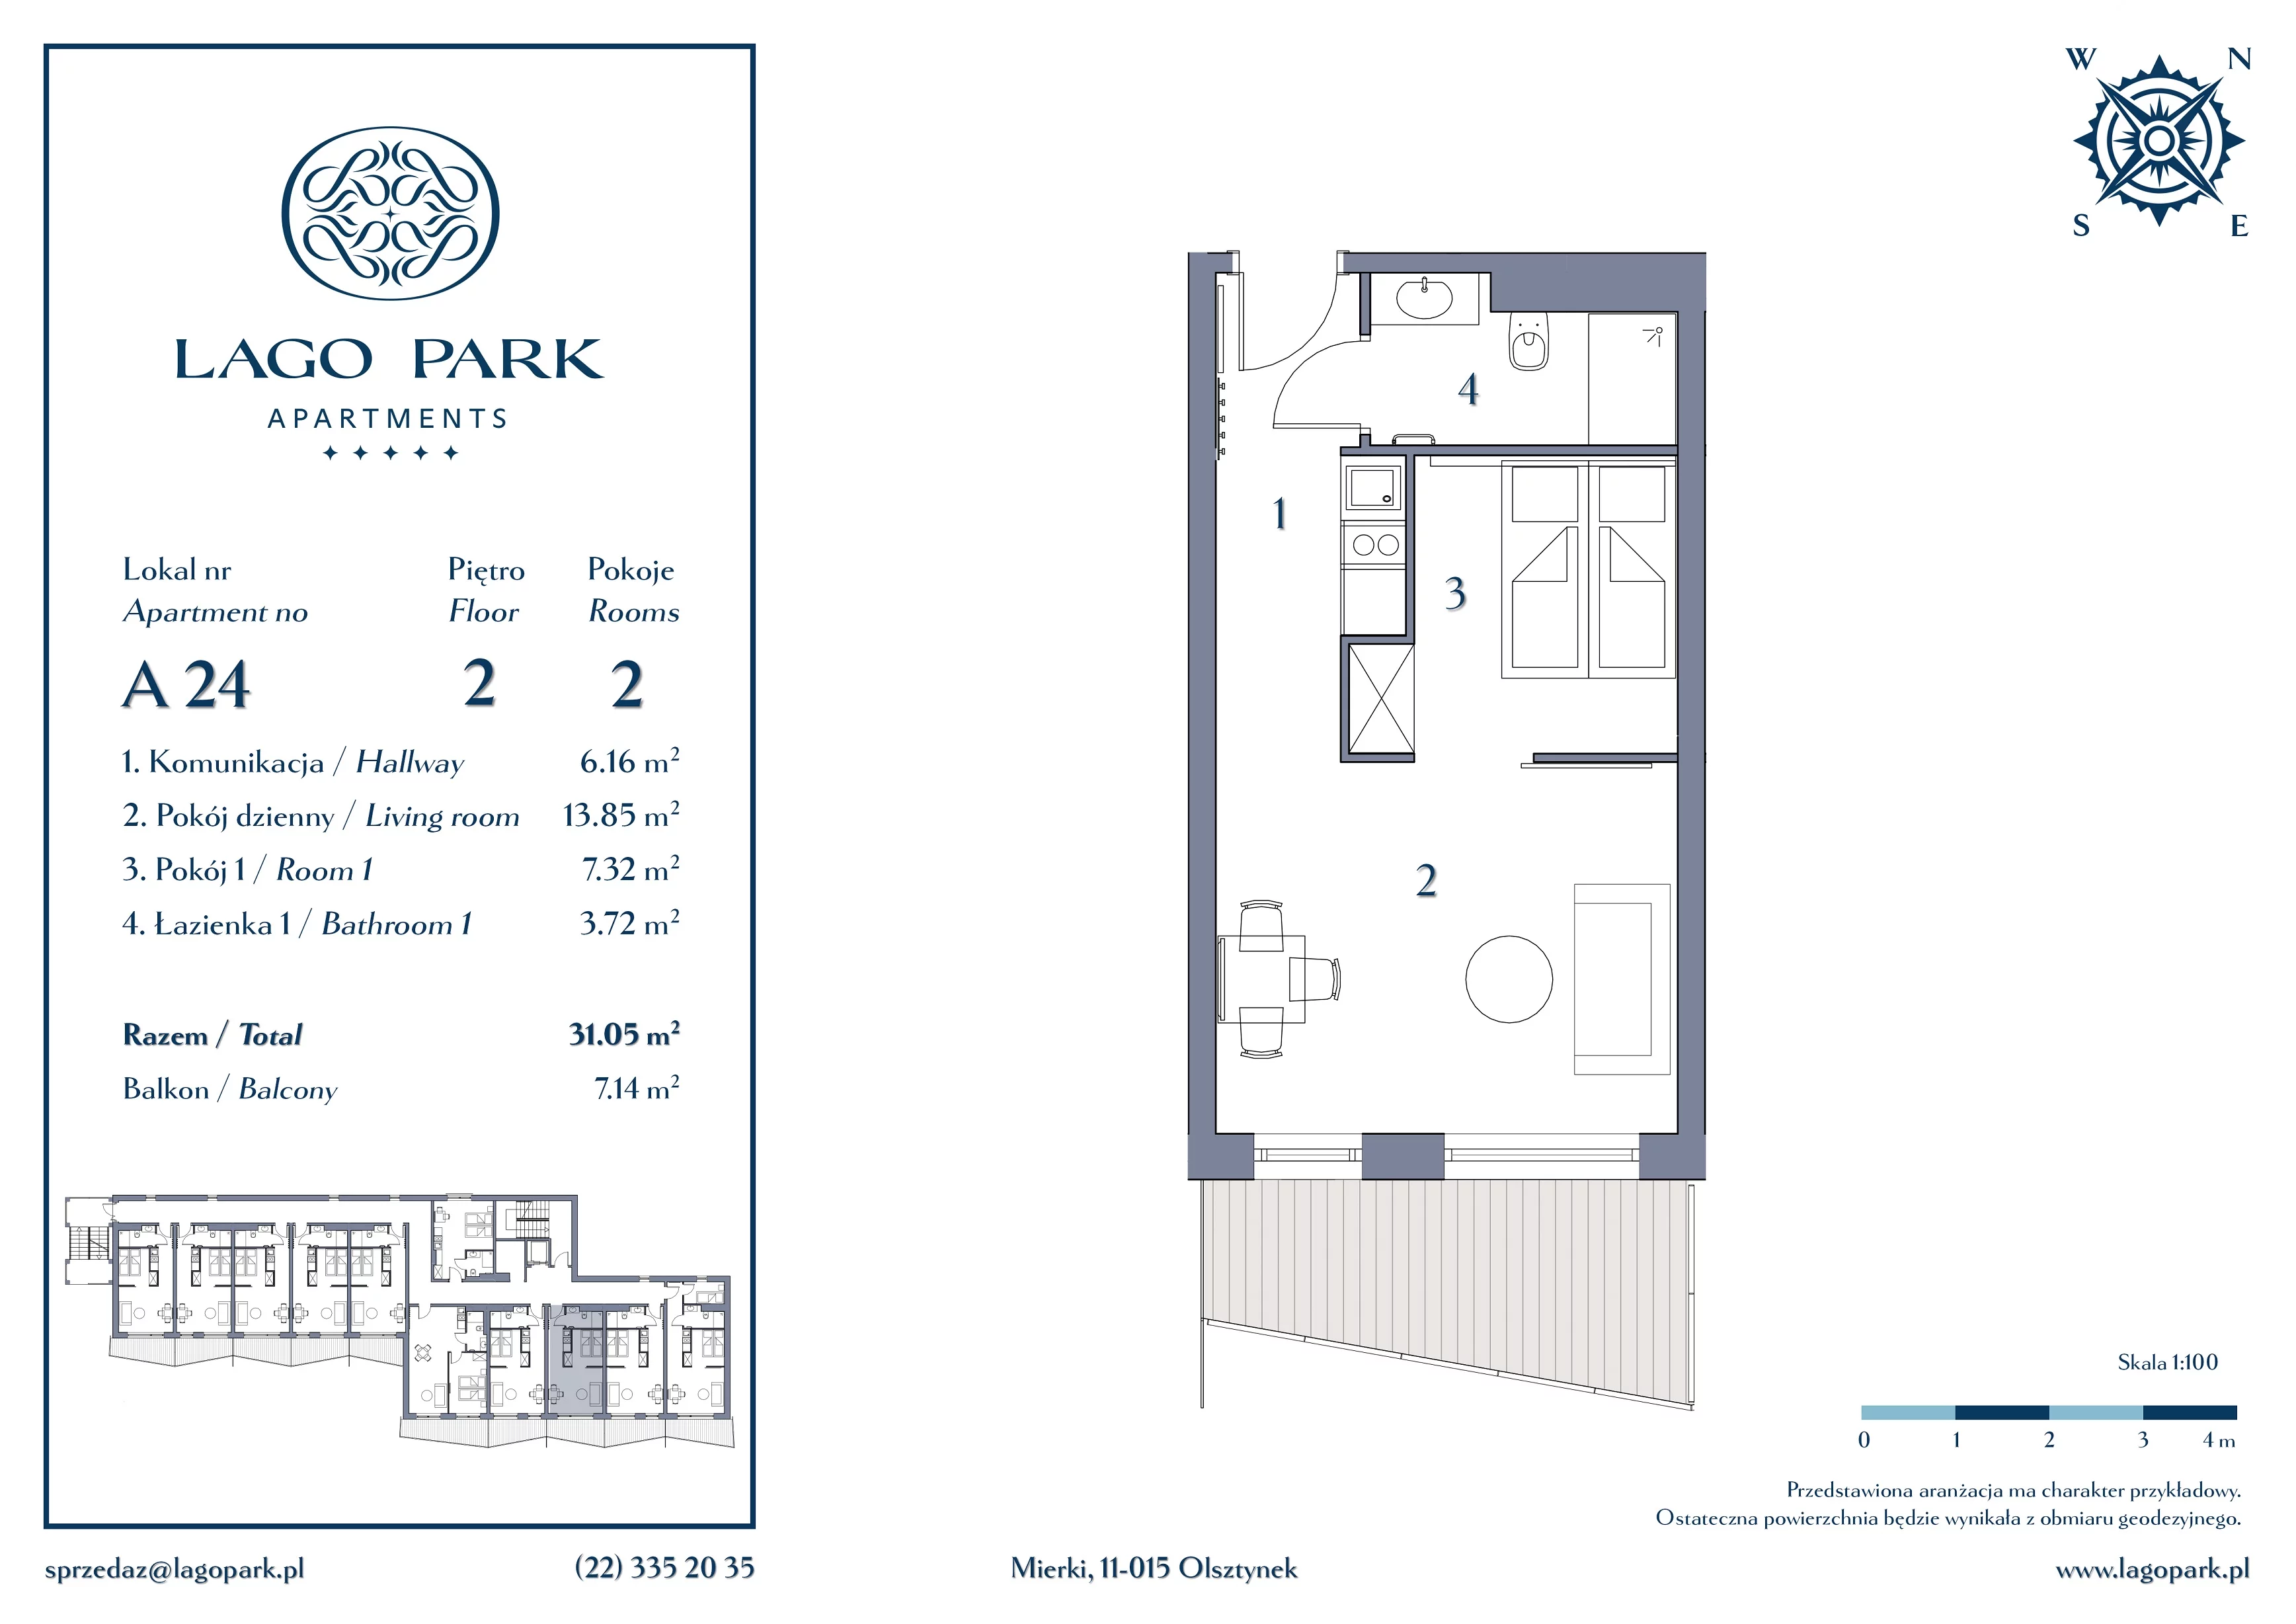 Apartament inwestycyjny 31,05 m², piętro 2, oferta nr A24, Lago Park Apartments by Aries, Mierki, Kołatek 2